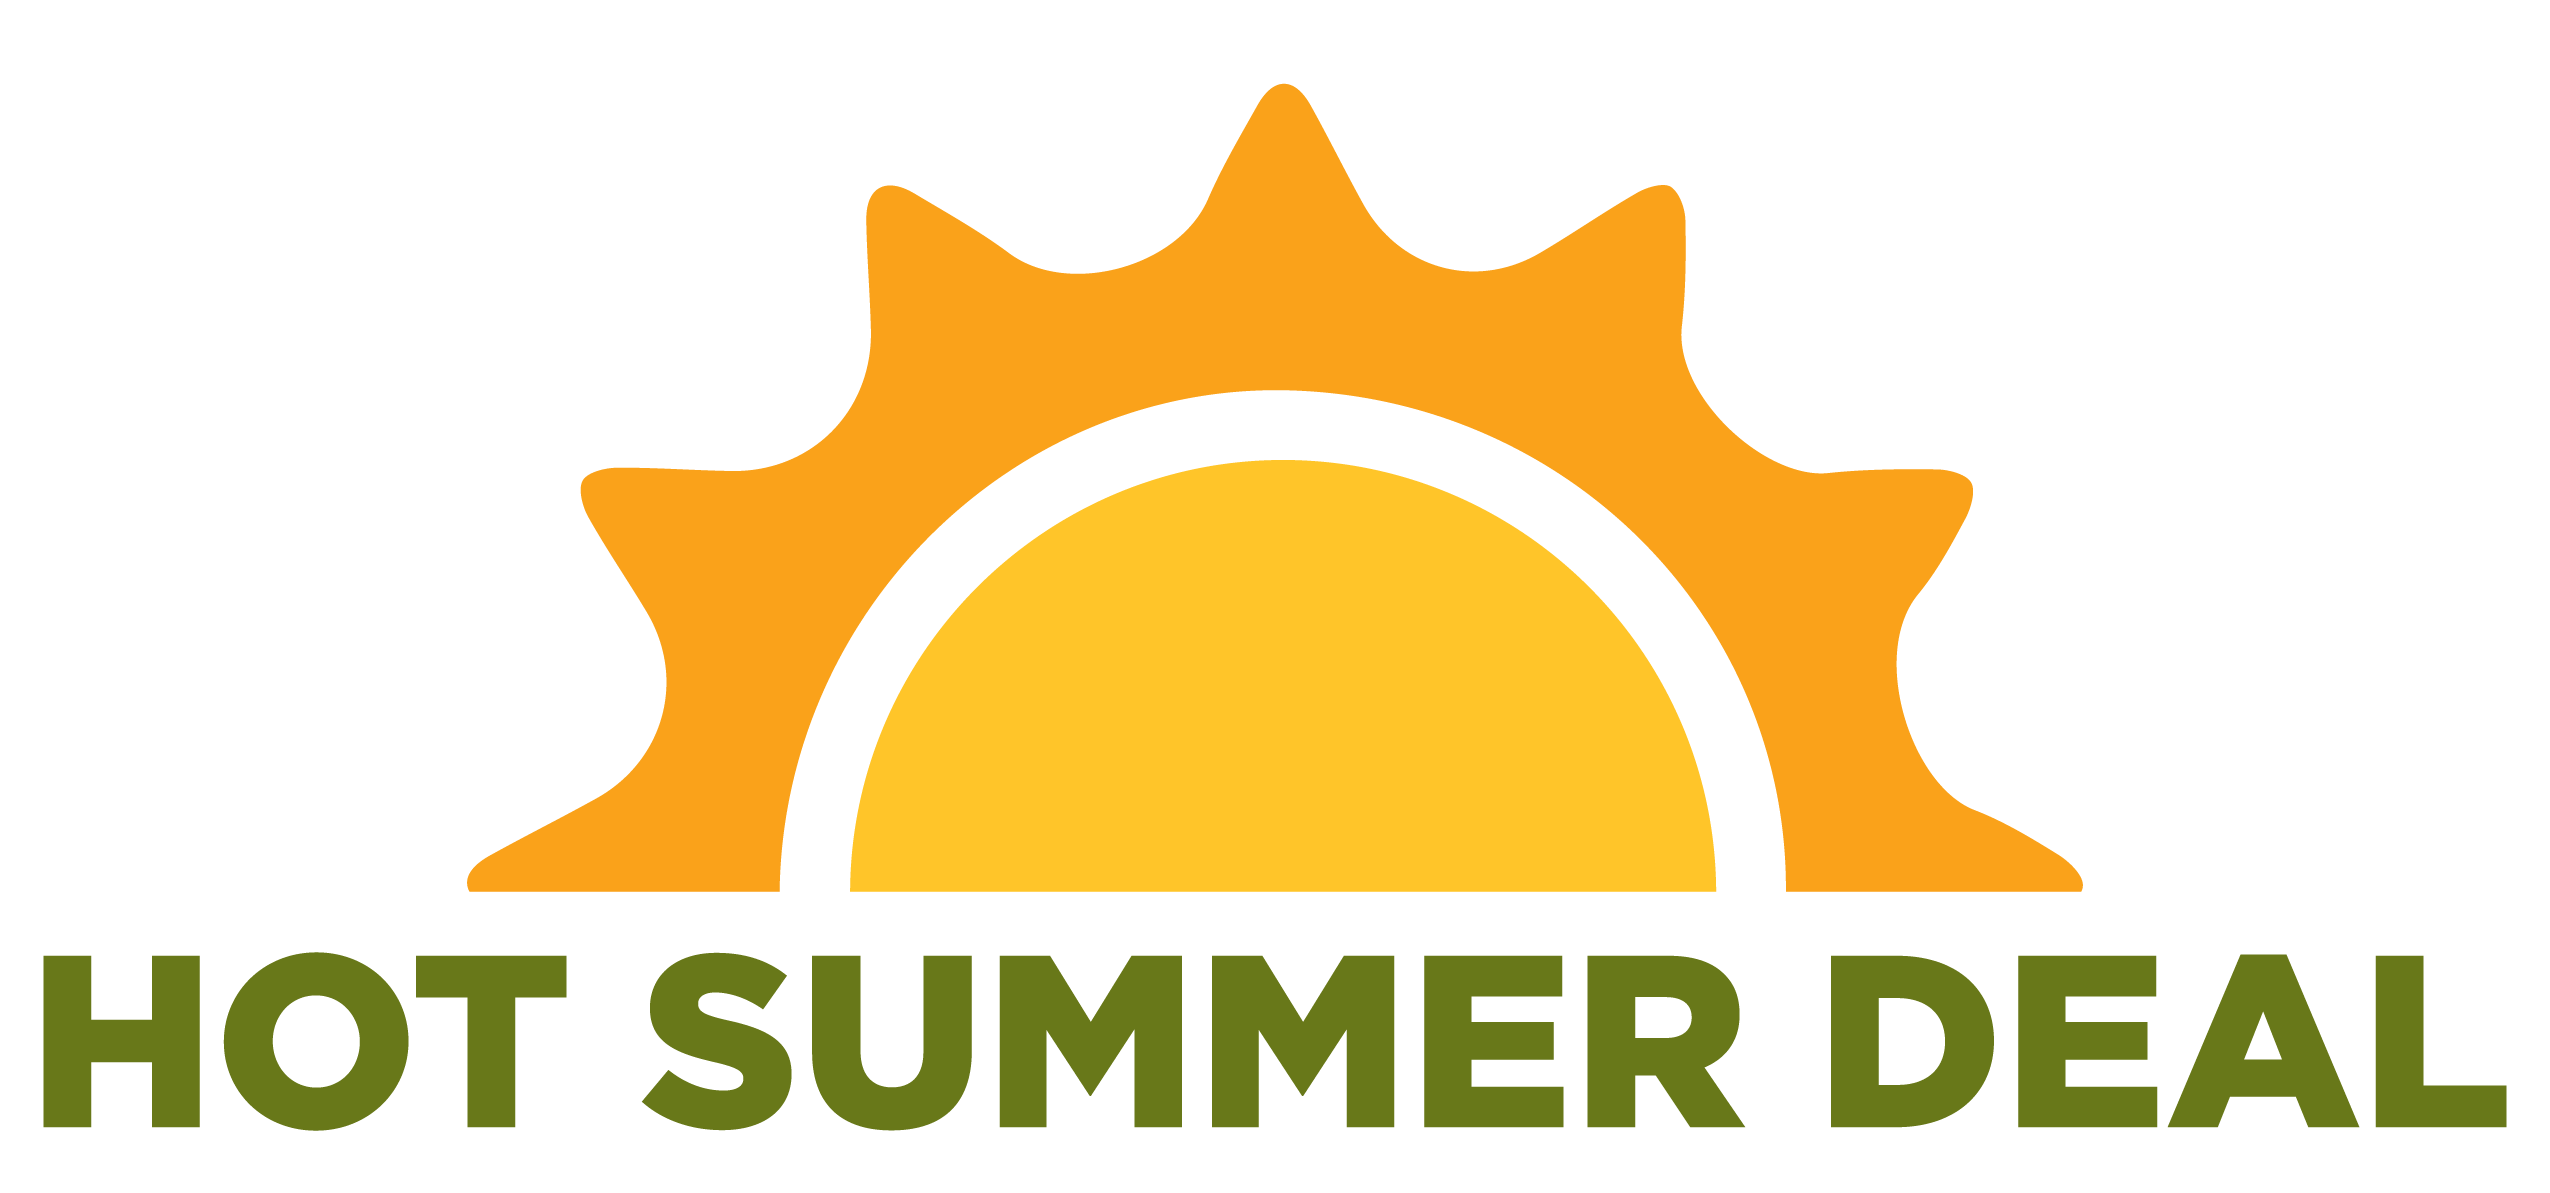 Hot Summer Deal Feature